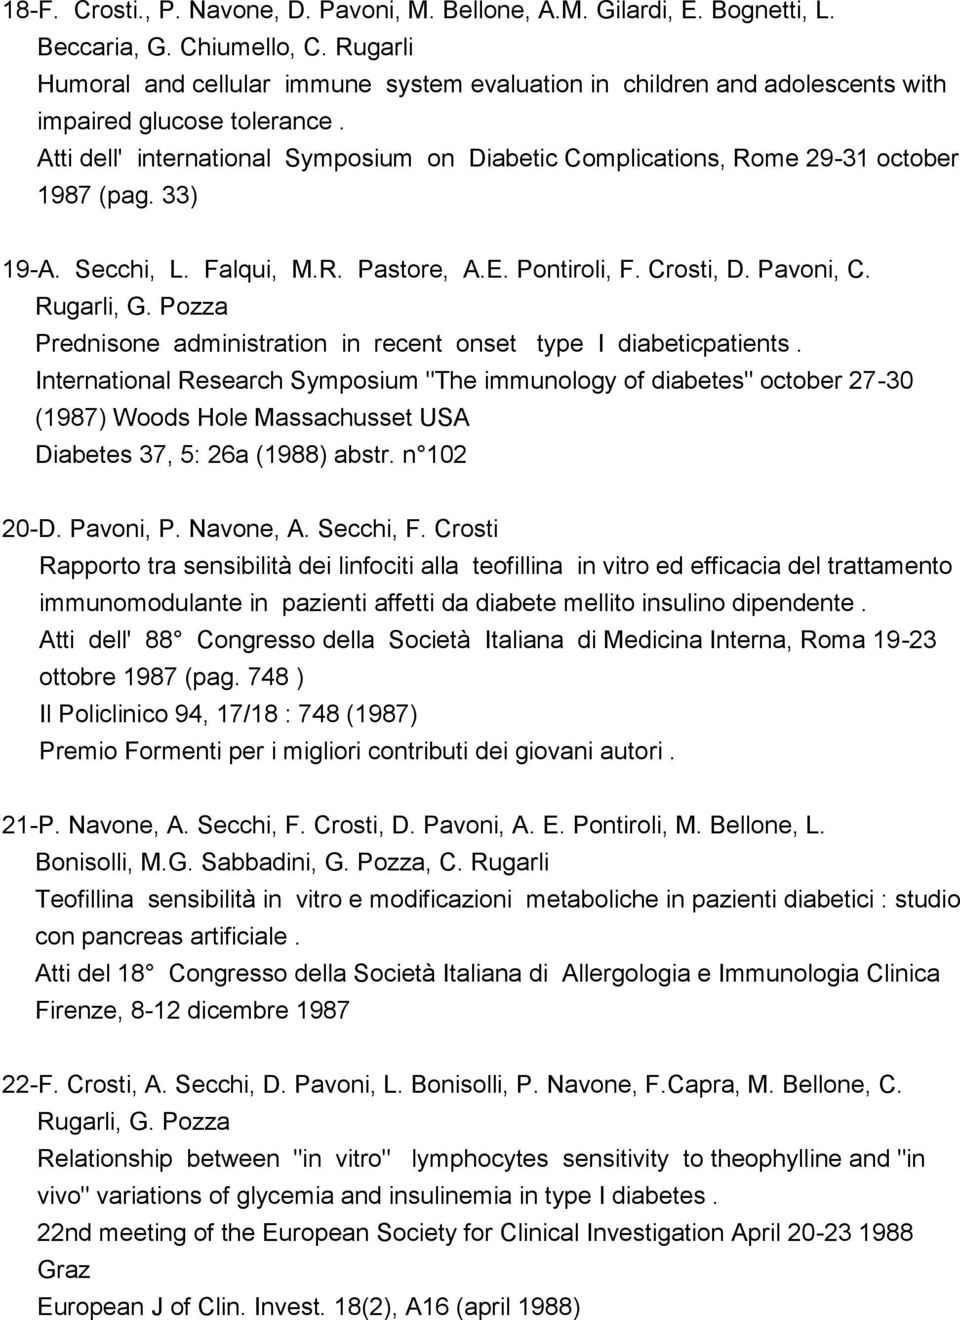 Atti dell' international Symposium on Diabetic Complications, Rome 29-31 october 1987 (pag. 33) 19-A. Secchi, L. Falqui, M.R. Pastore, A.E. Pontiroli, F. Crosti, D. Pavoni, C. Rugarli, G.